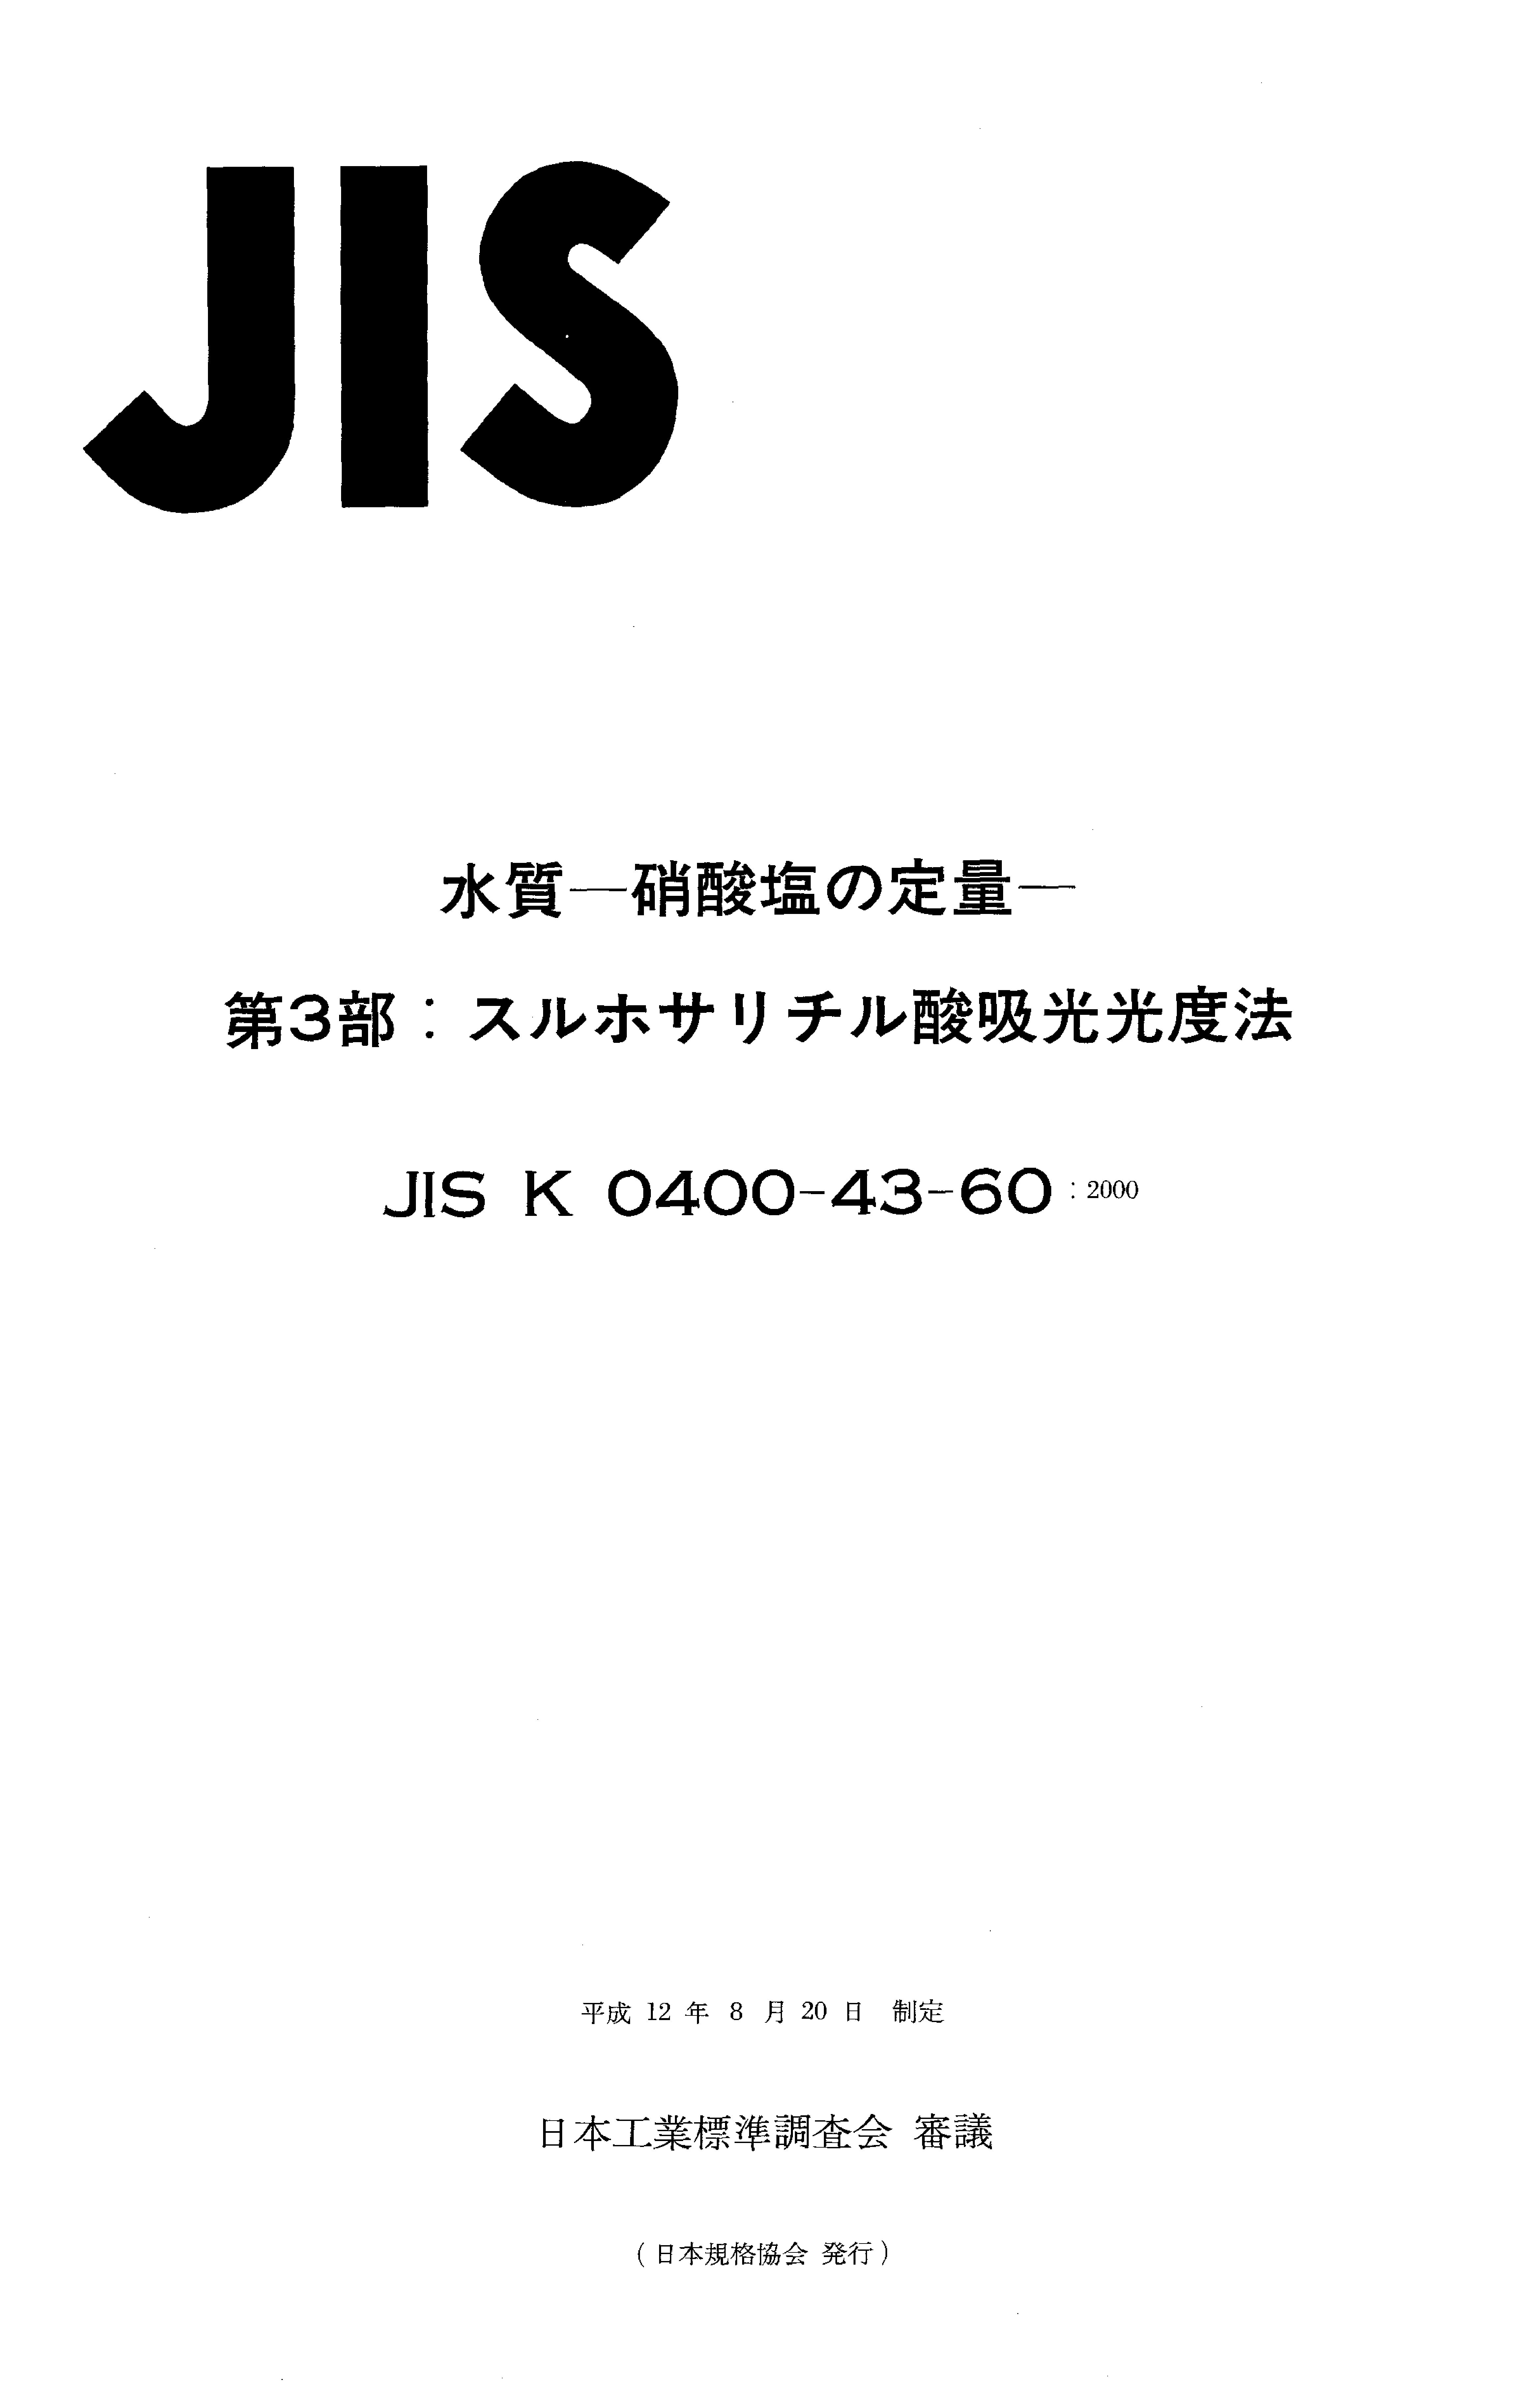 JIS K 0400-43-60:2000封面图